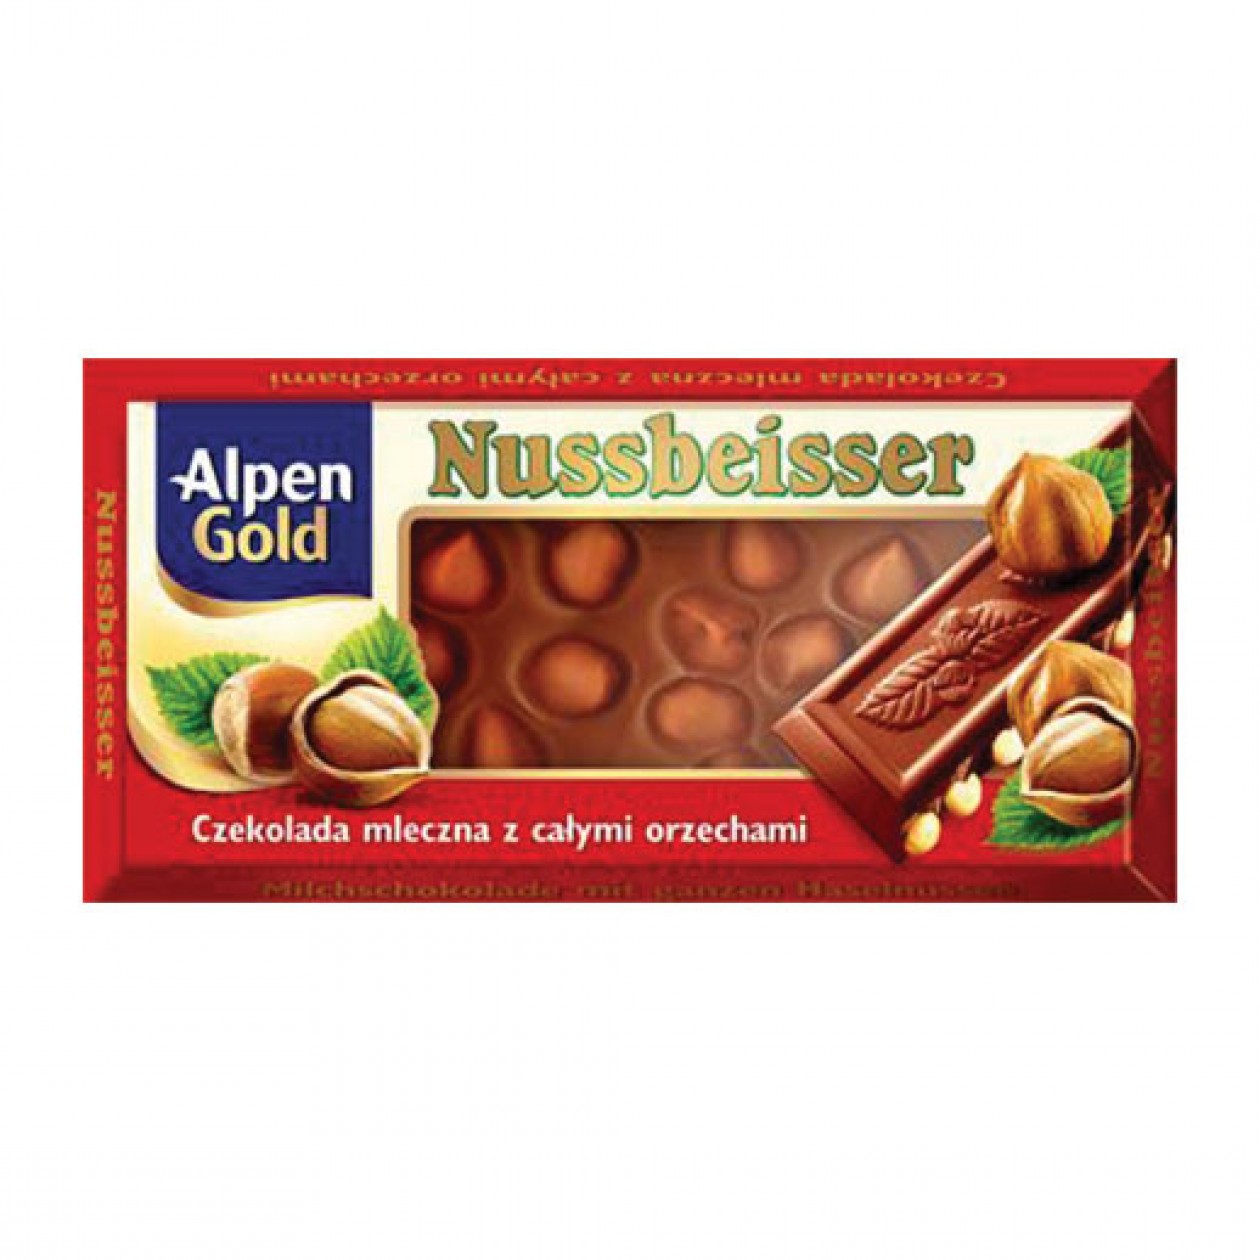 Alpen Gold Chocolate (Nussbeisser Czekolada) 20x100g